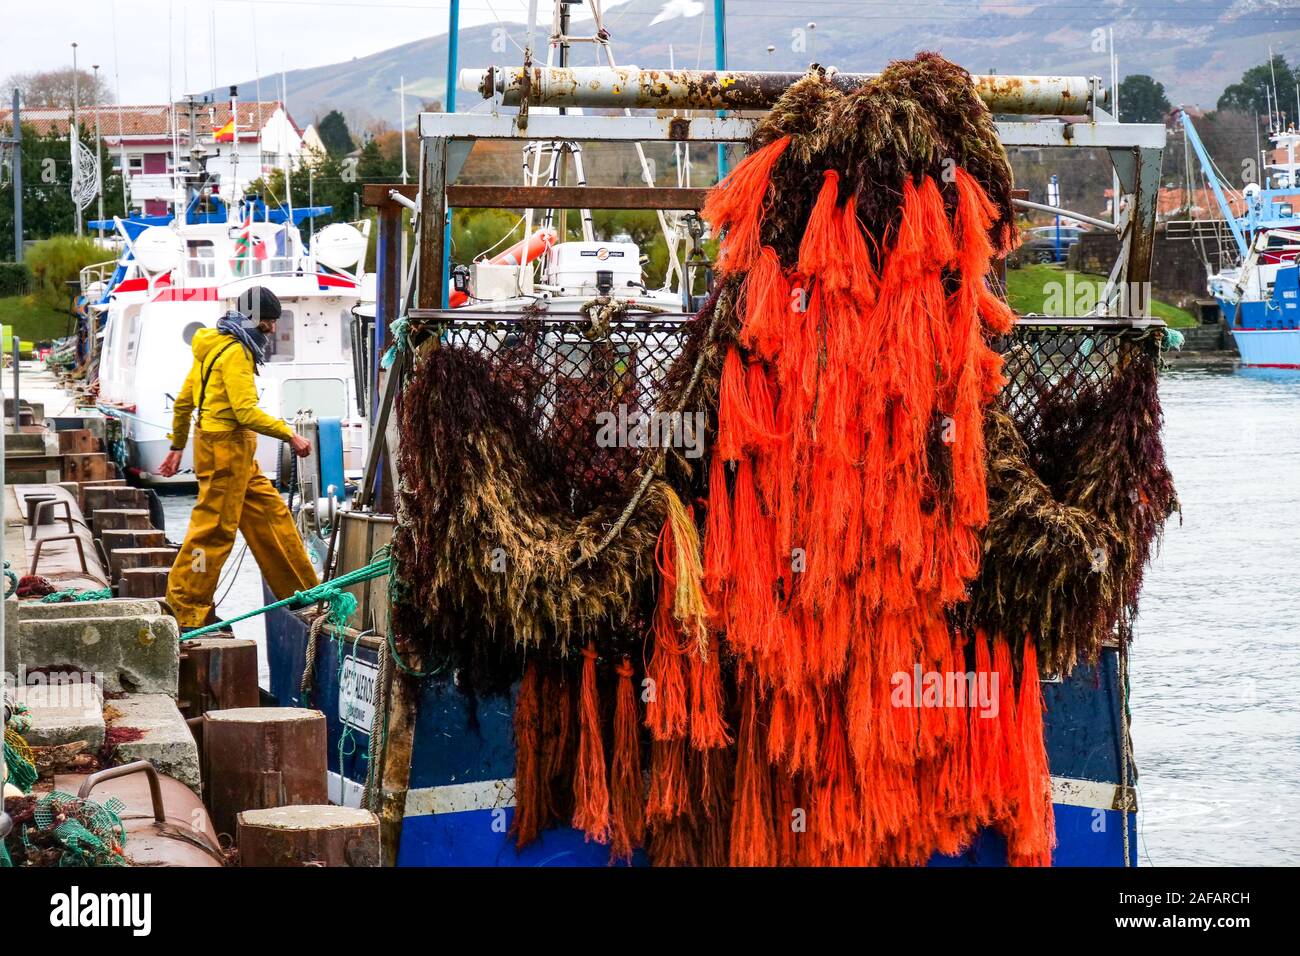 Lo scarico di alghe rosse, porto di pescatori di Saint Jean de Luz, Pyrénées-Atlantiques, Francia Foto Stock